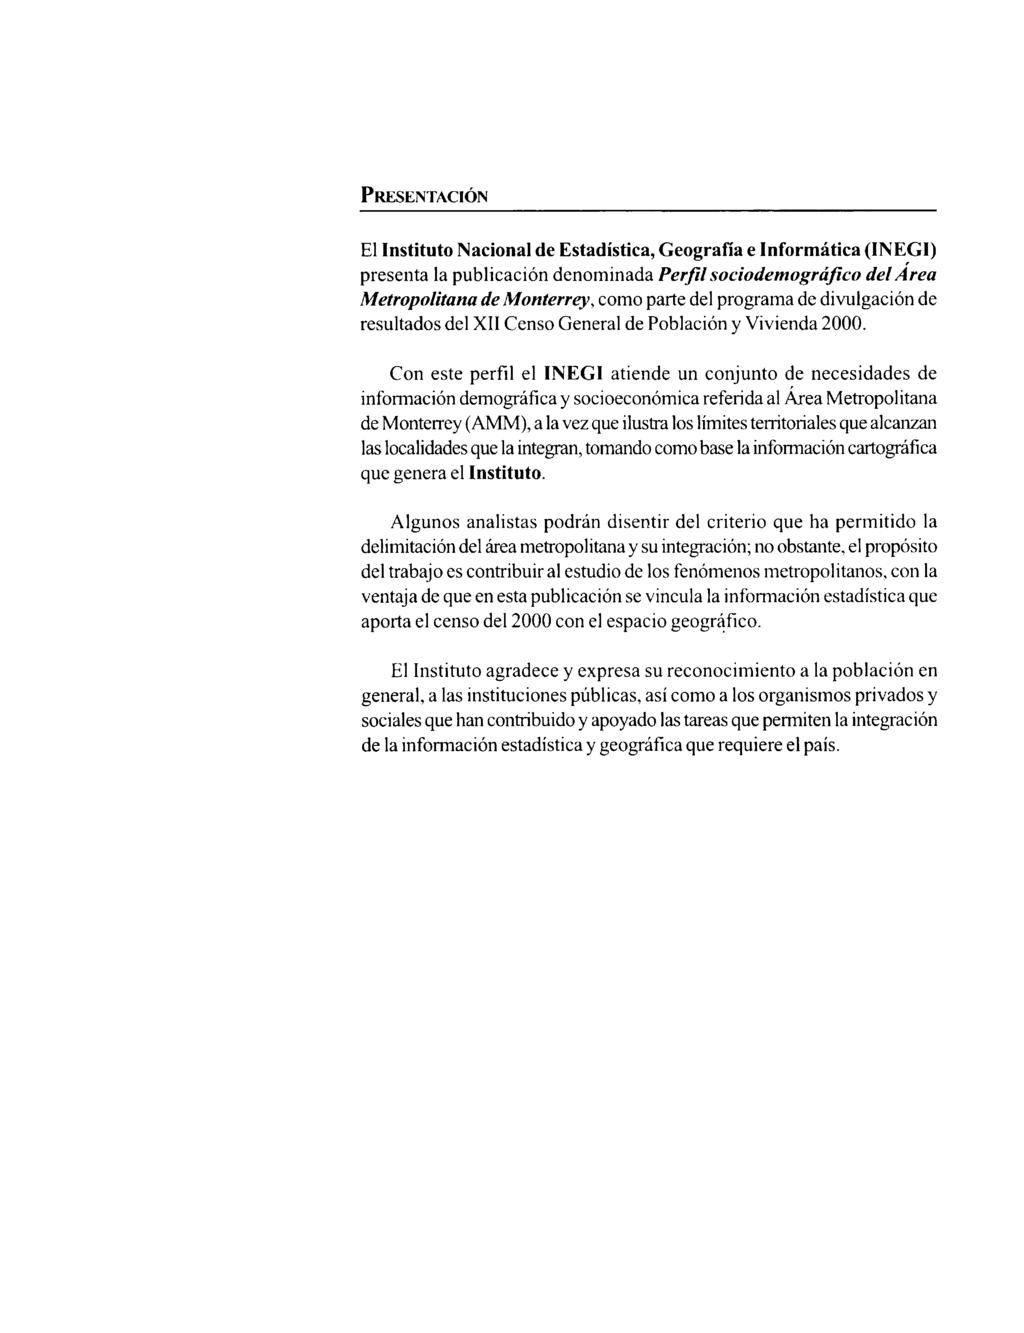 Presentación El Instituto Nacional de Estadística, Geografía e Informática (INEGI) presenta la publicación denominada Perfil sociodemográjico del Area Metropolitana de Monterrey, como parte del